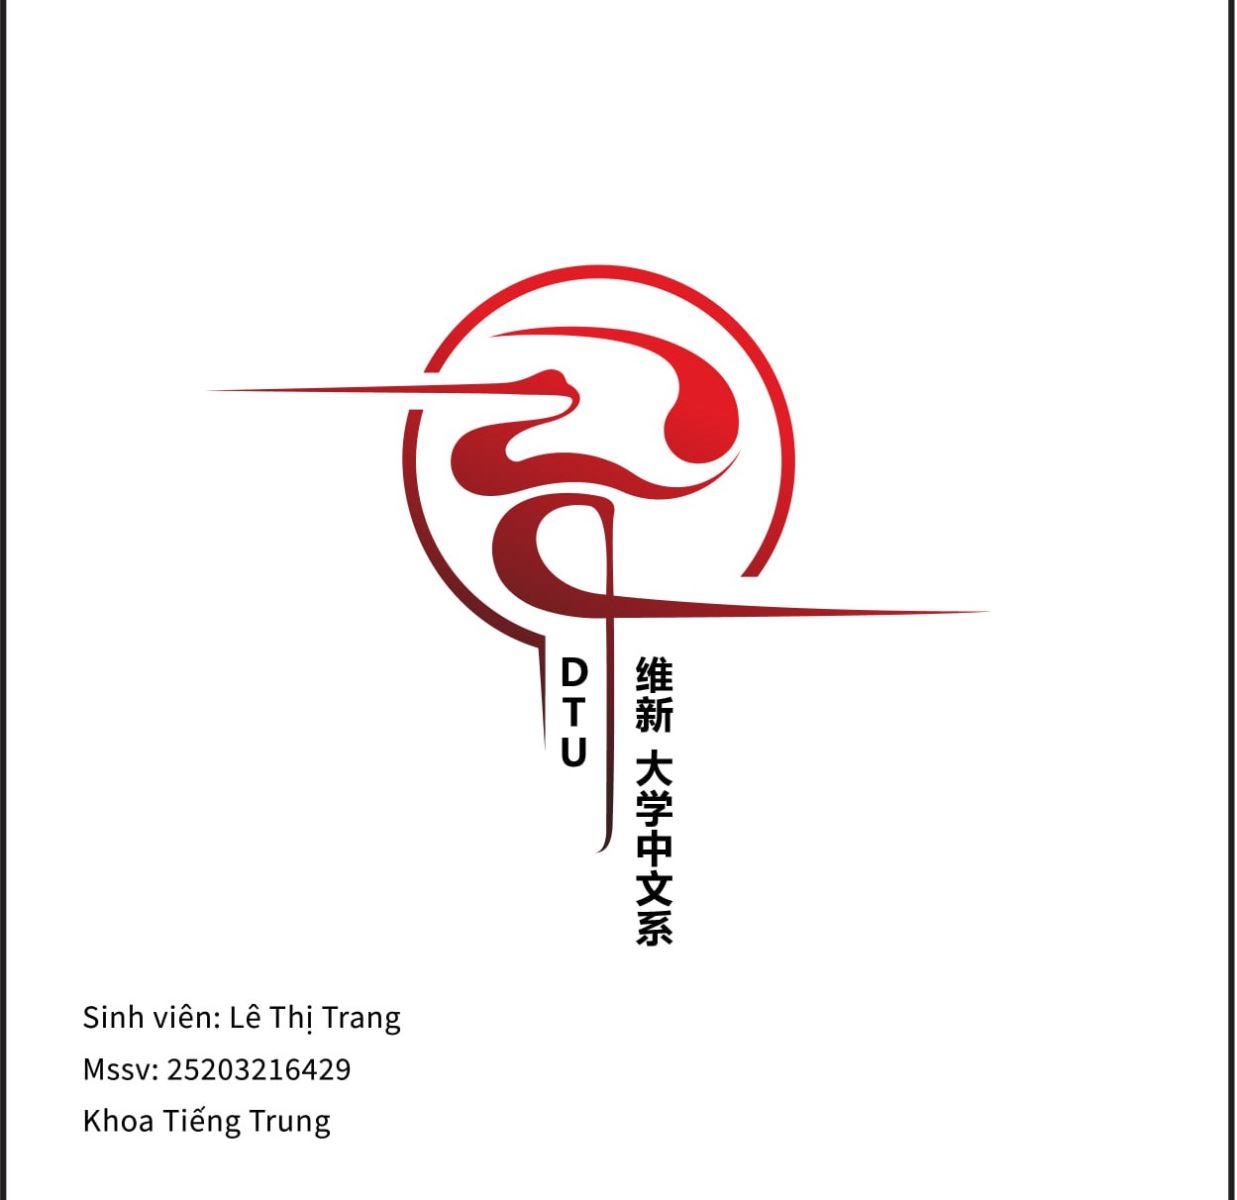 Tác phẩm dự thi số 12:
⭐ Họ và tên: Lê Thị Trang
⭐ Lớp: K26NTQ1
⭐ Tác phẩm dự thi: Logo DT

